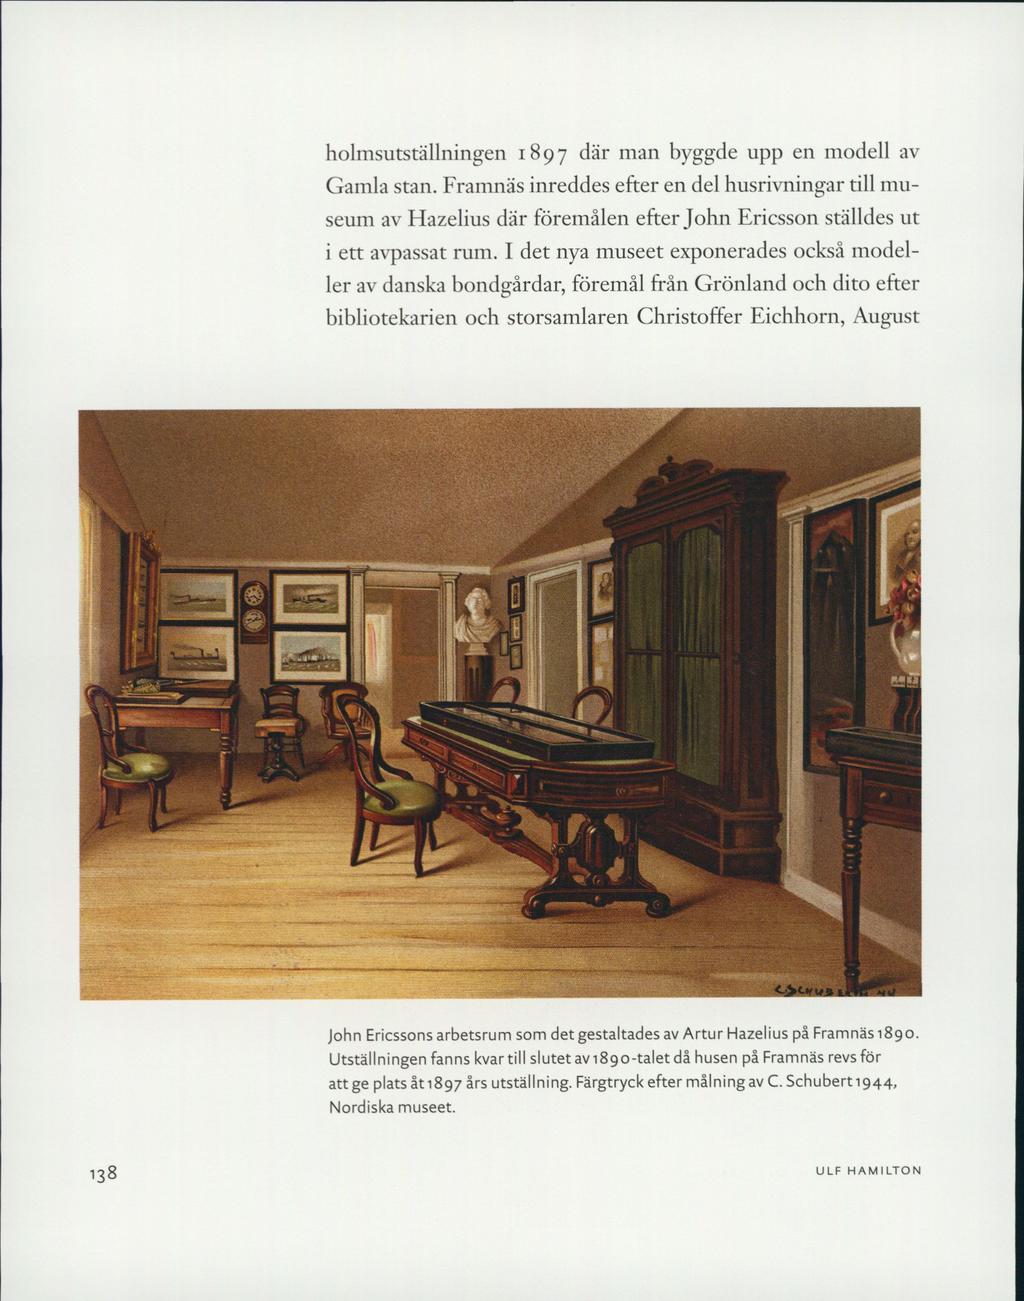 holmsutställningen 1897 där man byggde upp en modell av Gamla stan. Framnäs inreddes efter en del husrivningar till museum av Hazelius där föremålen efter John Ericsson ställdes ut i ett avpassat rum.